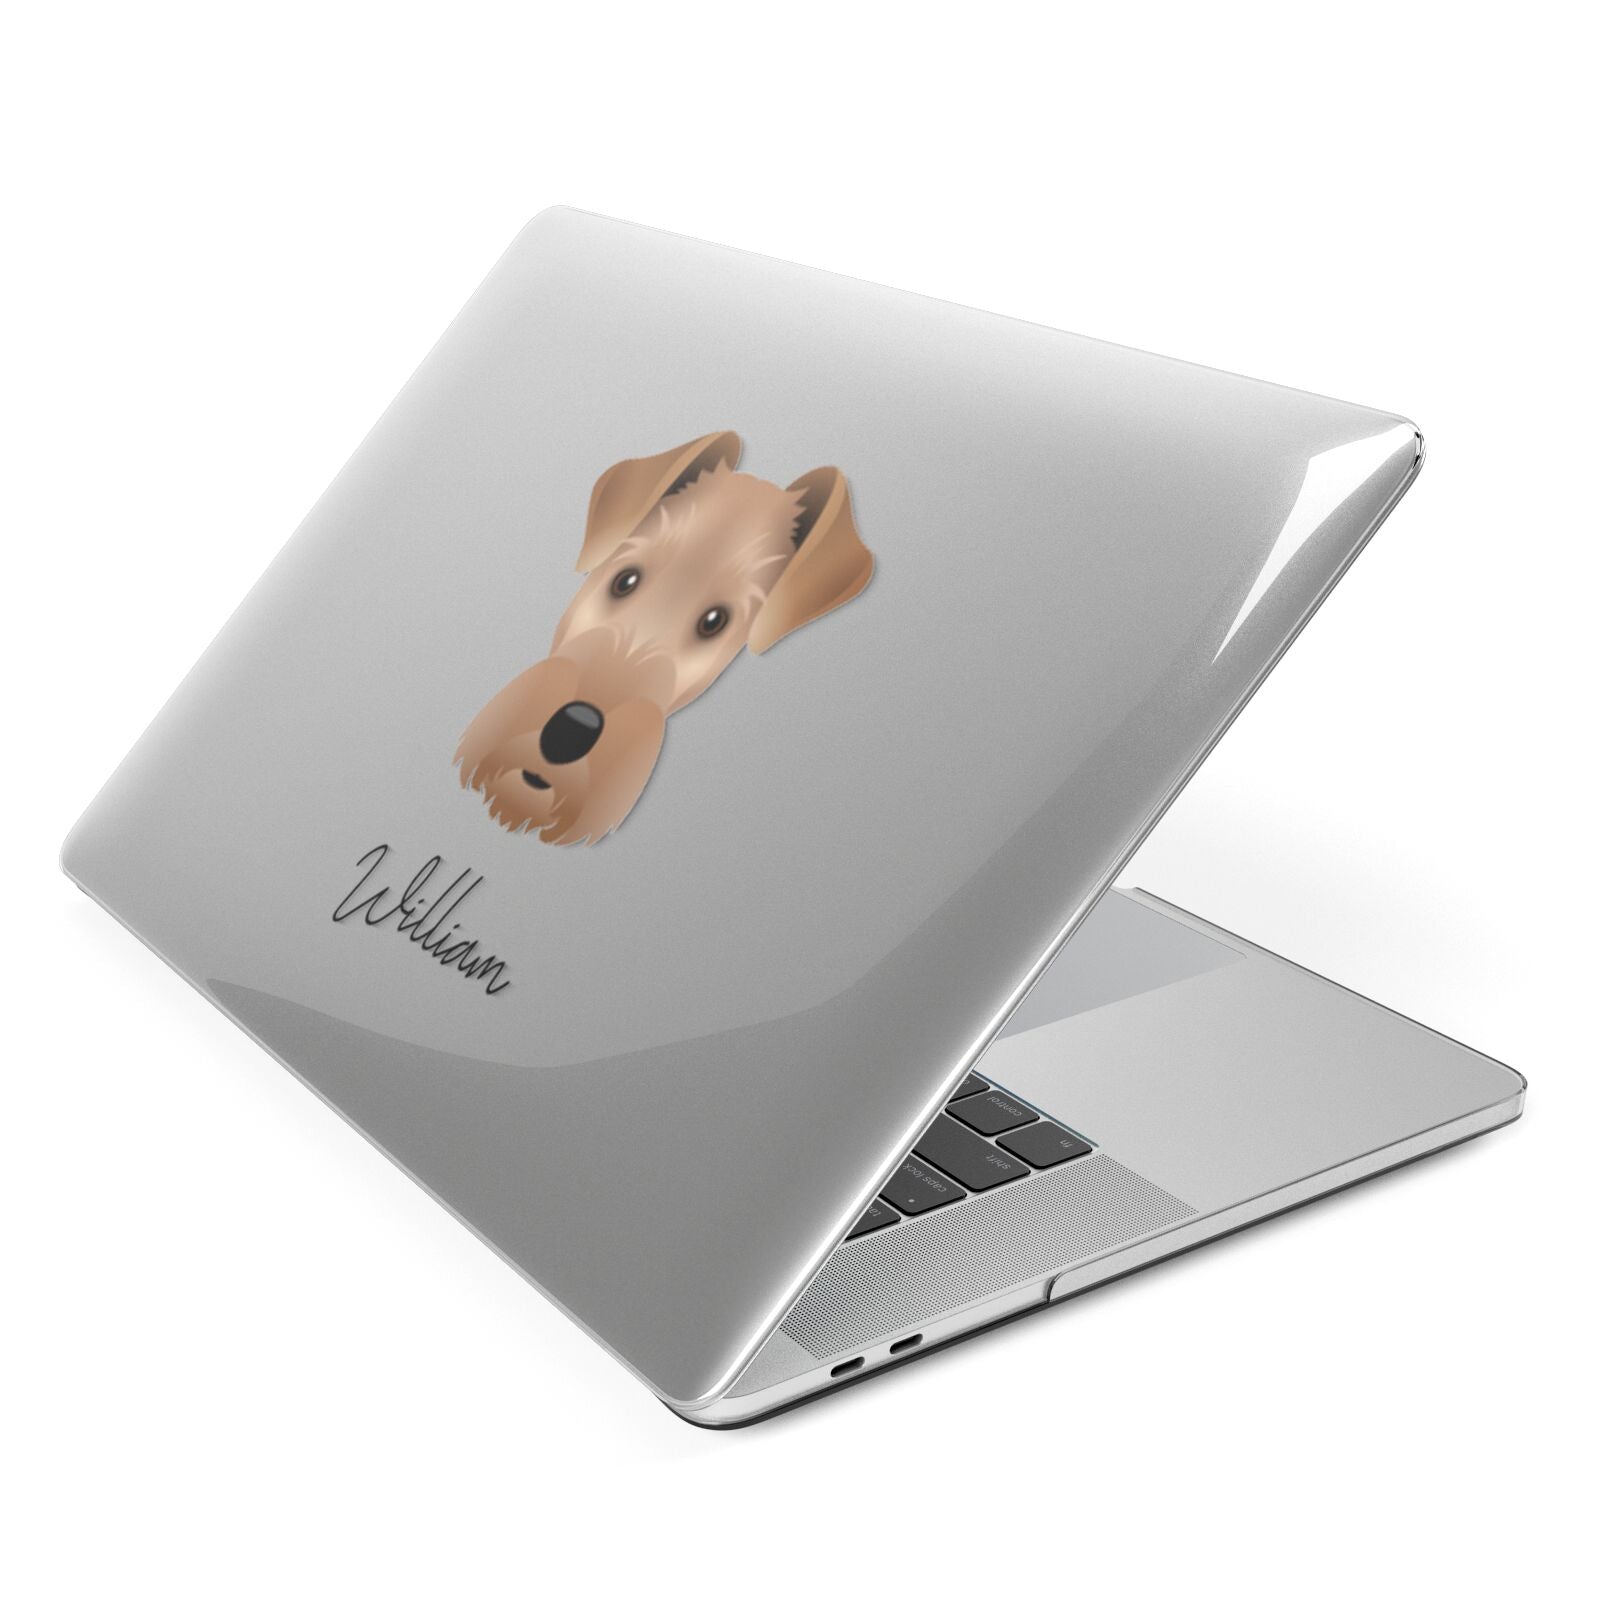 Welsh Terrier Personalised Apple MacBook Case Side View